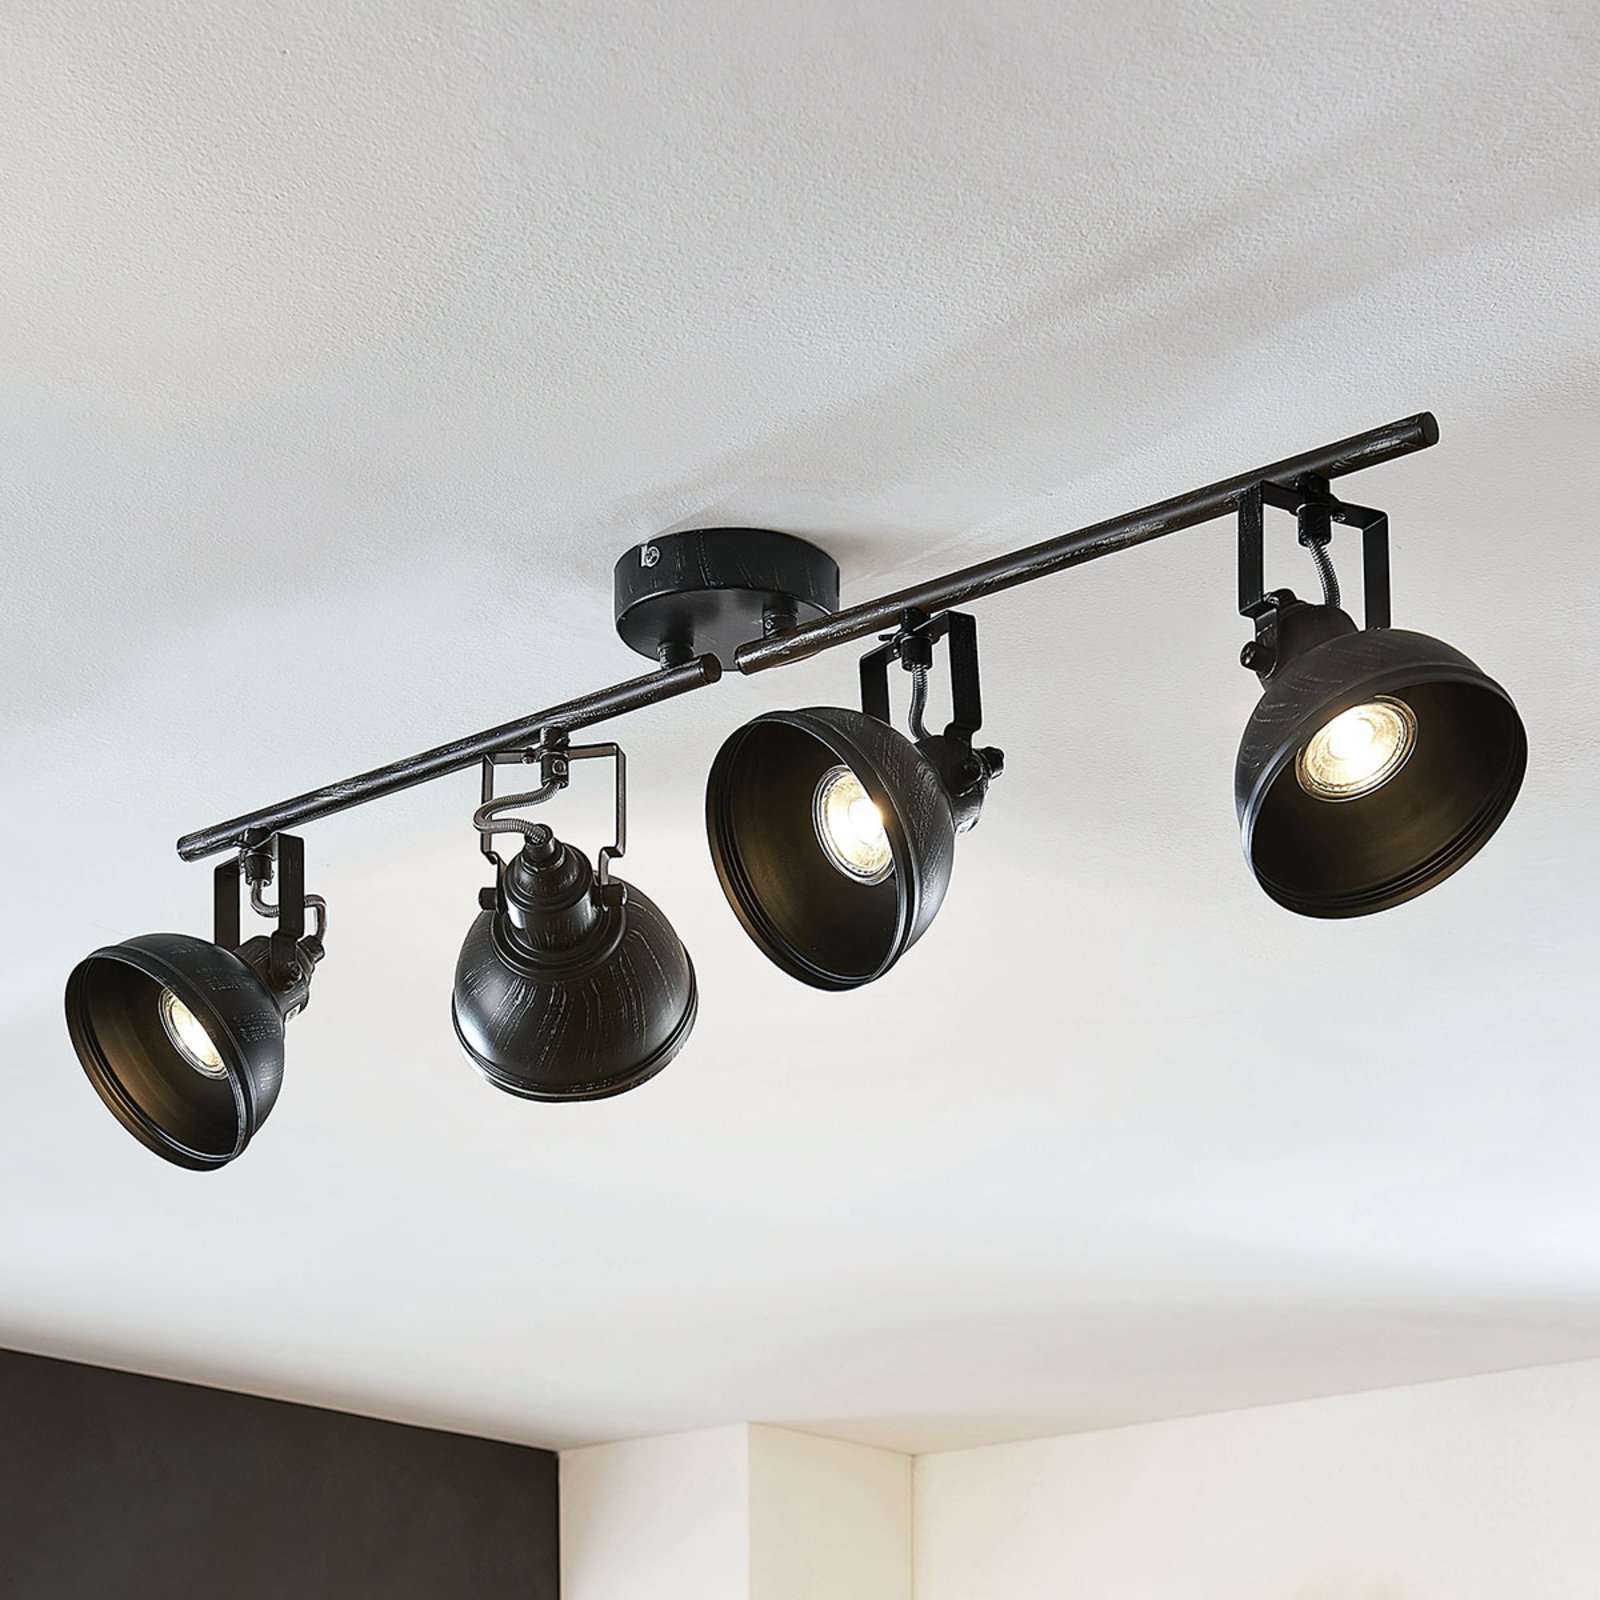 Lovro ceiling spotlight with four bulbs